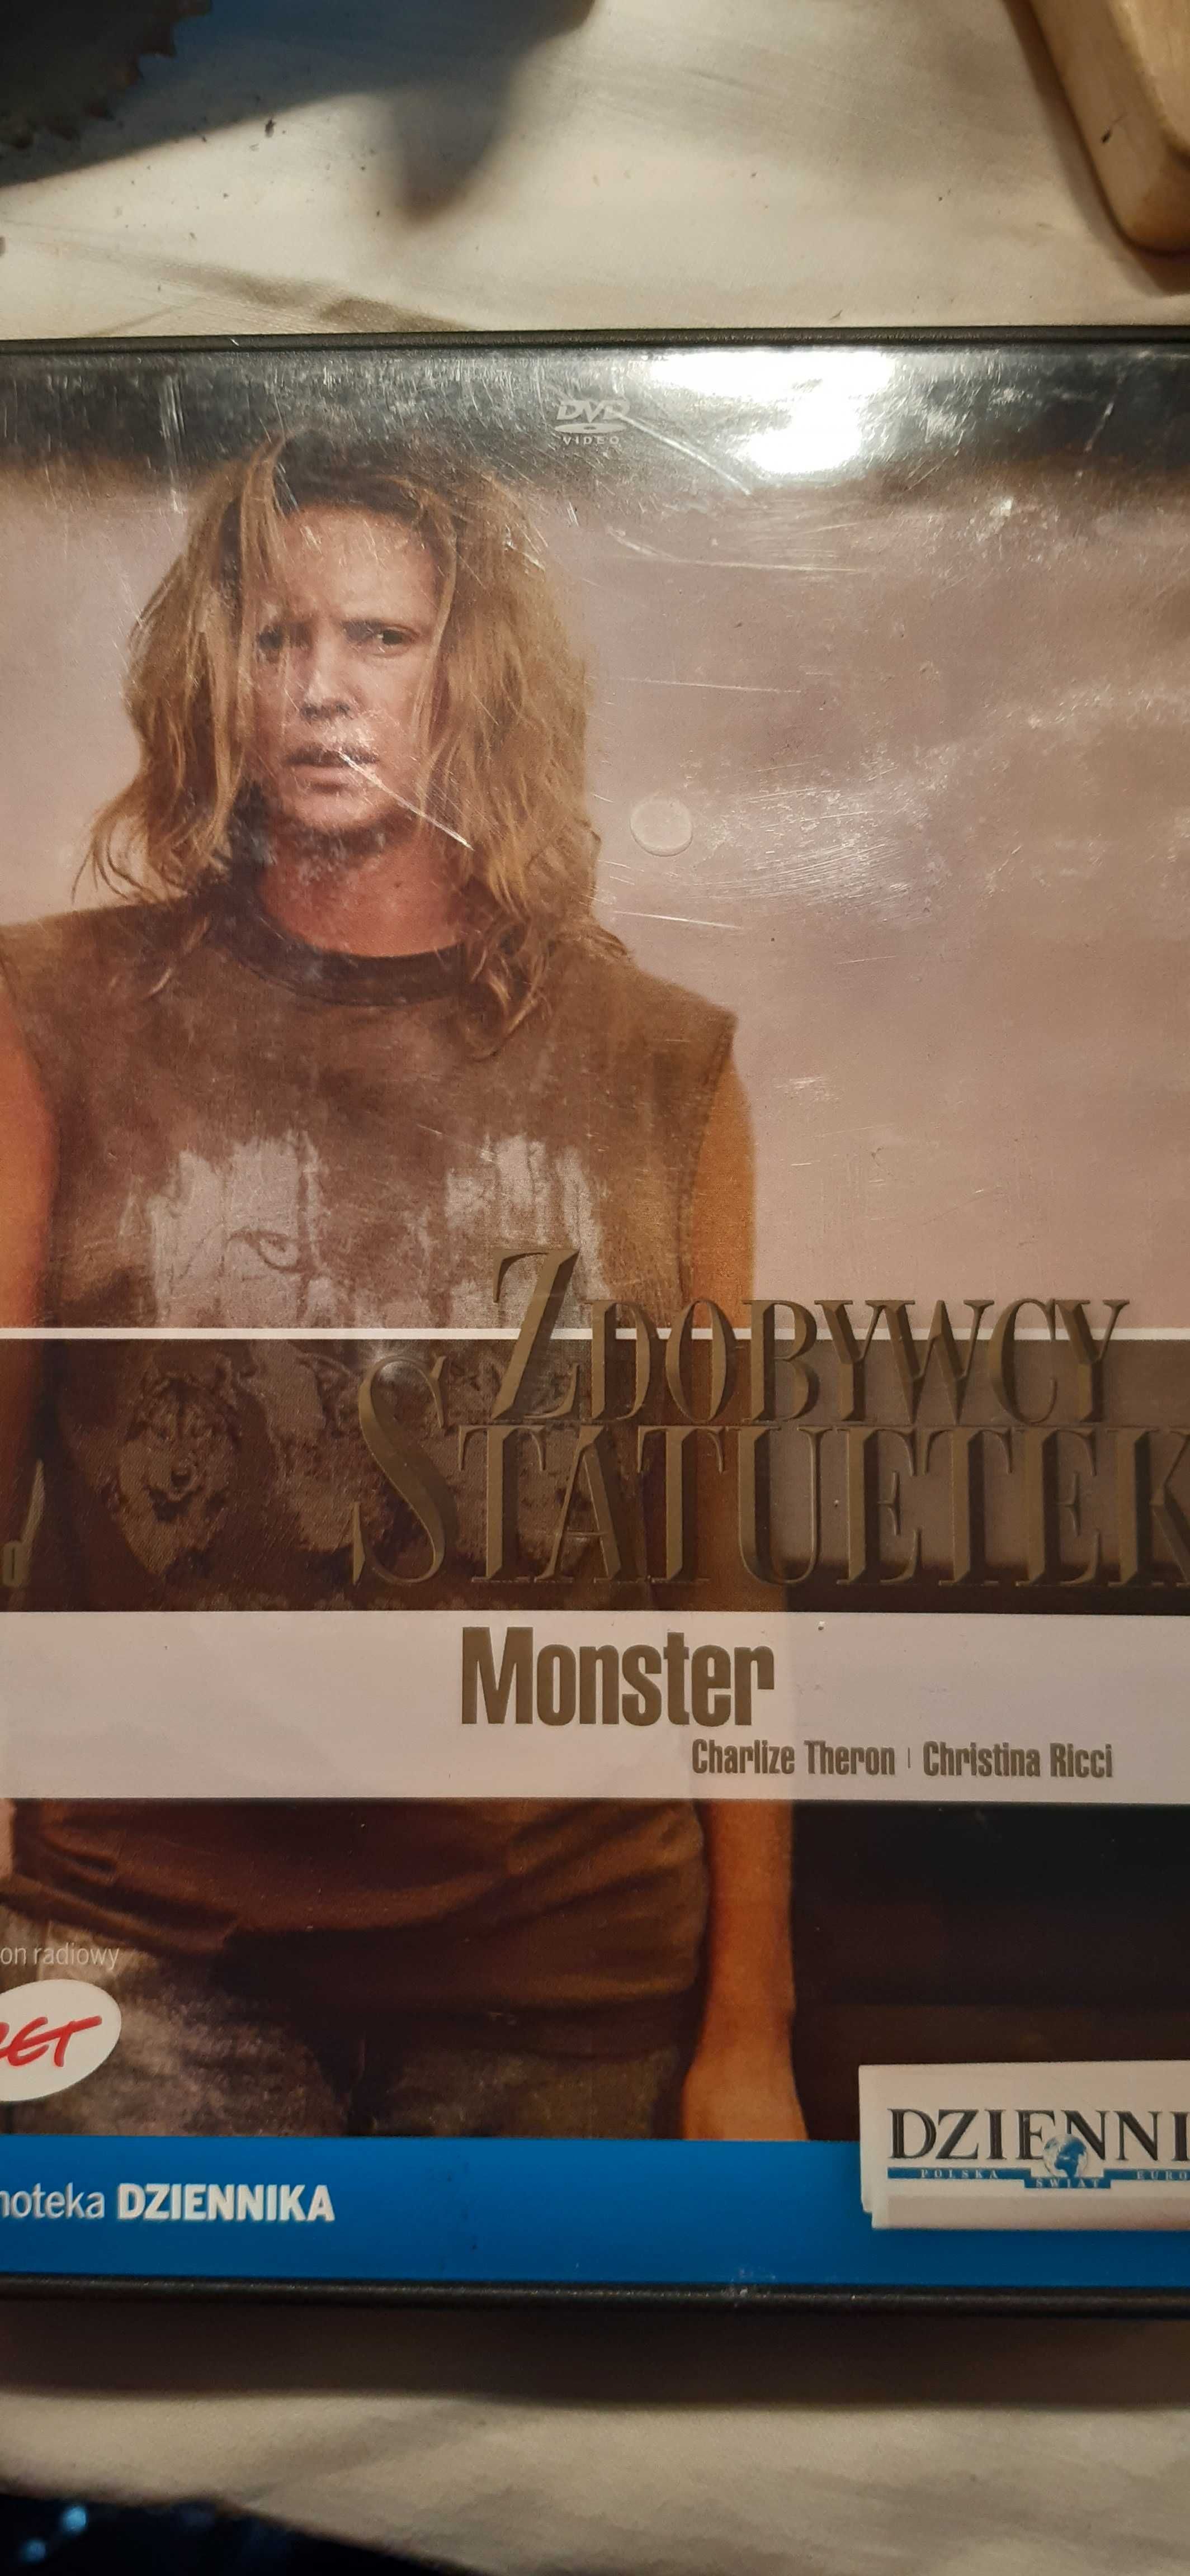 dvd film monster